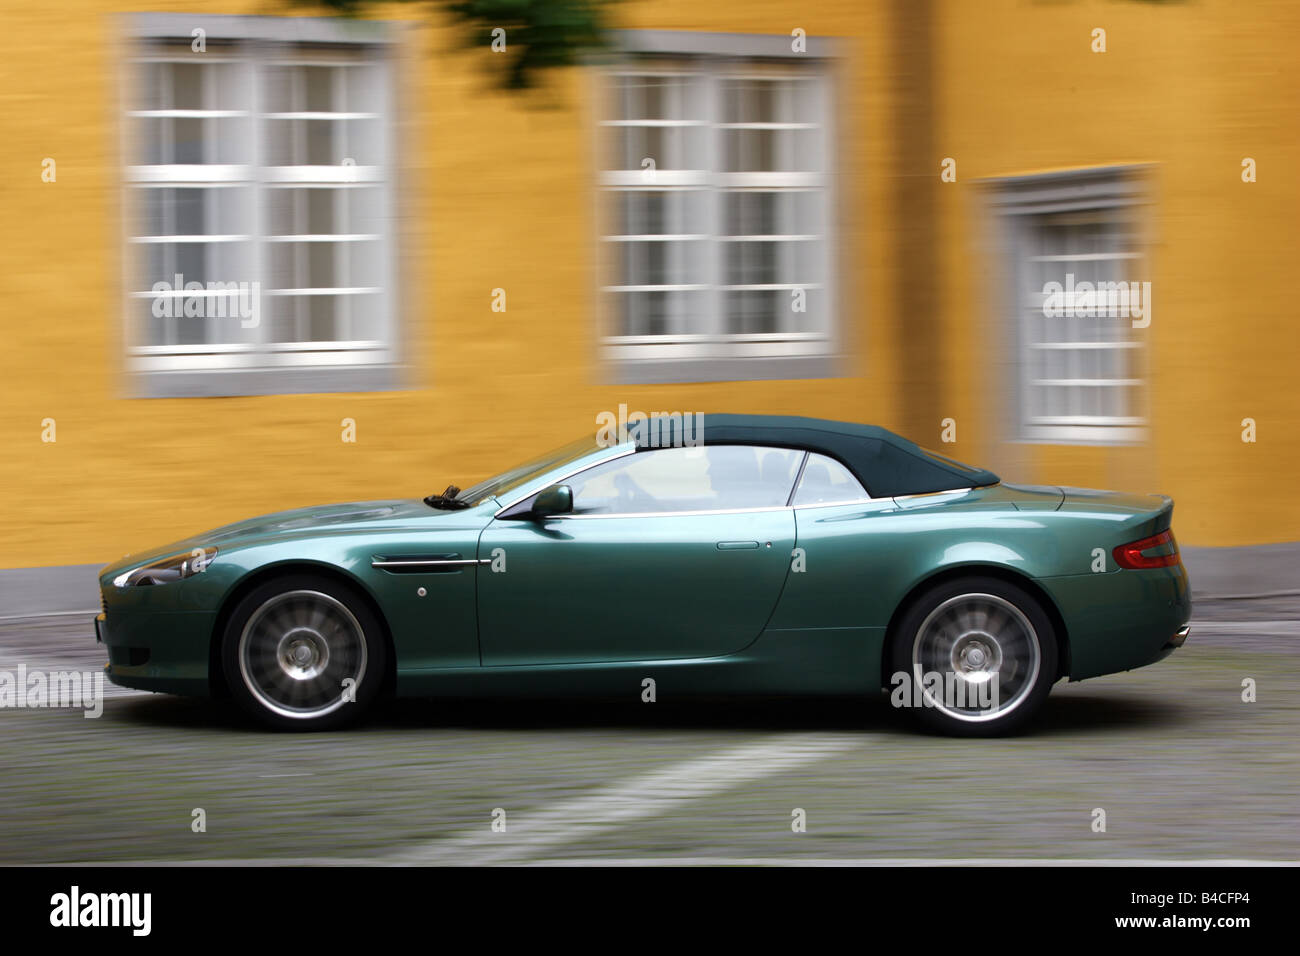 Aston Martin DB9 Volante, l'année de modèle 2005-, vert, la conduite, la vue de côté, la ville, fermé, juridiques, conducteur à droite Banque D'Images